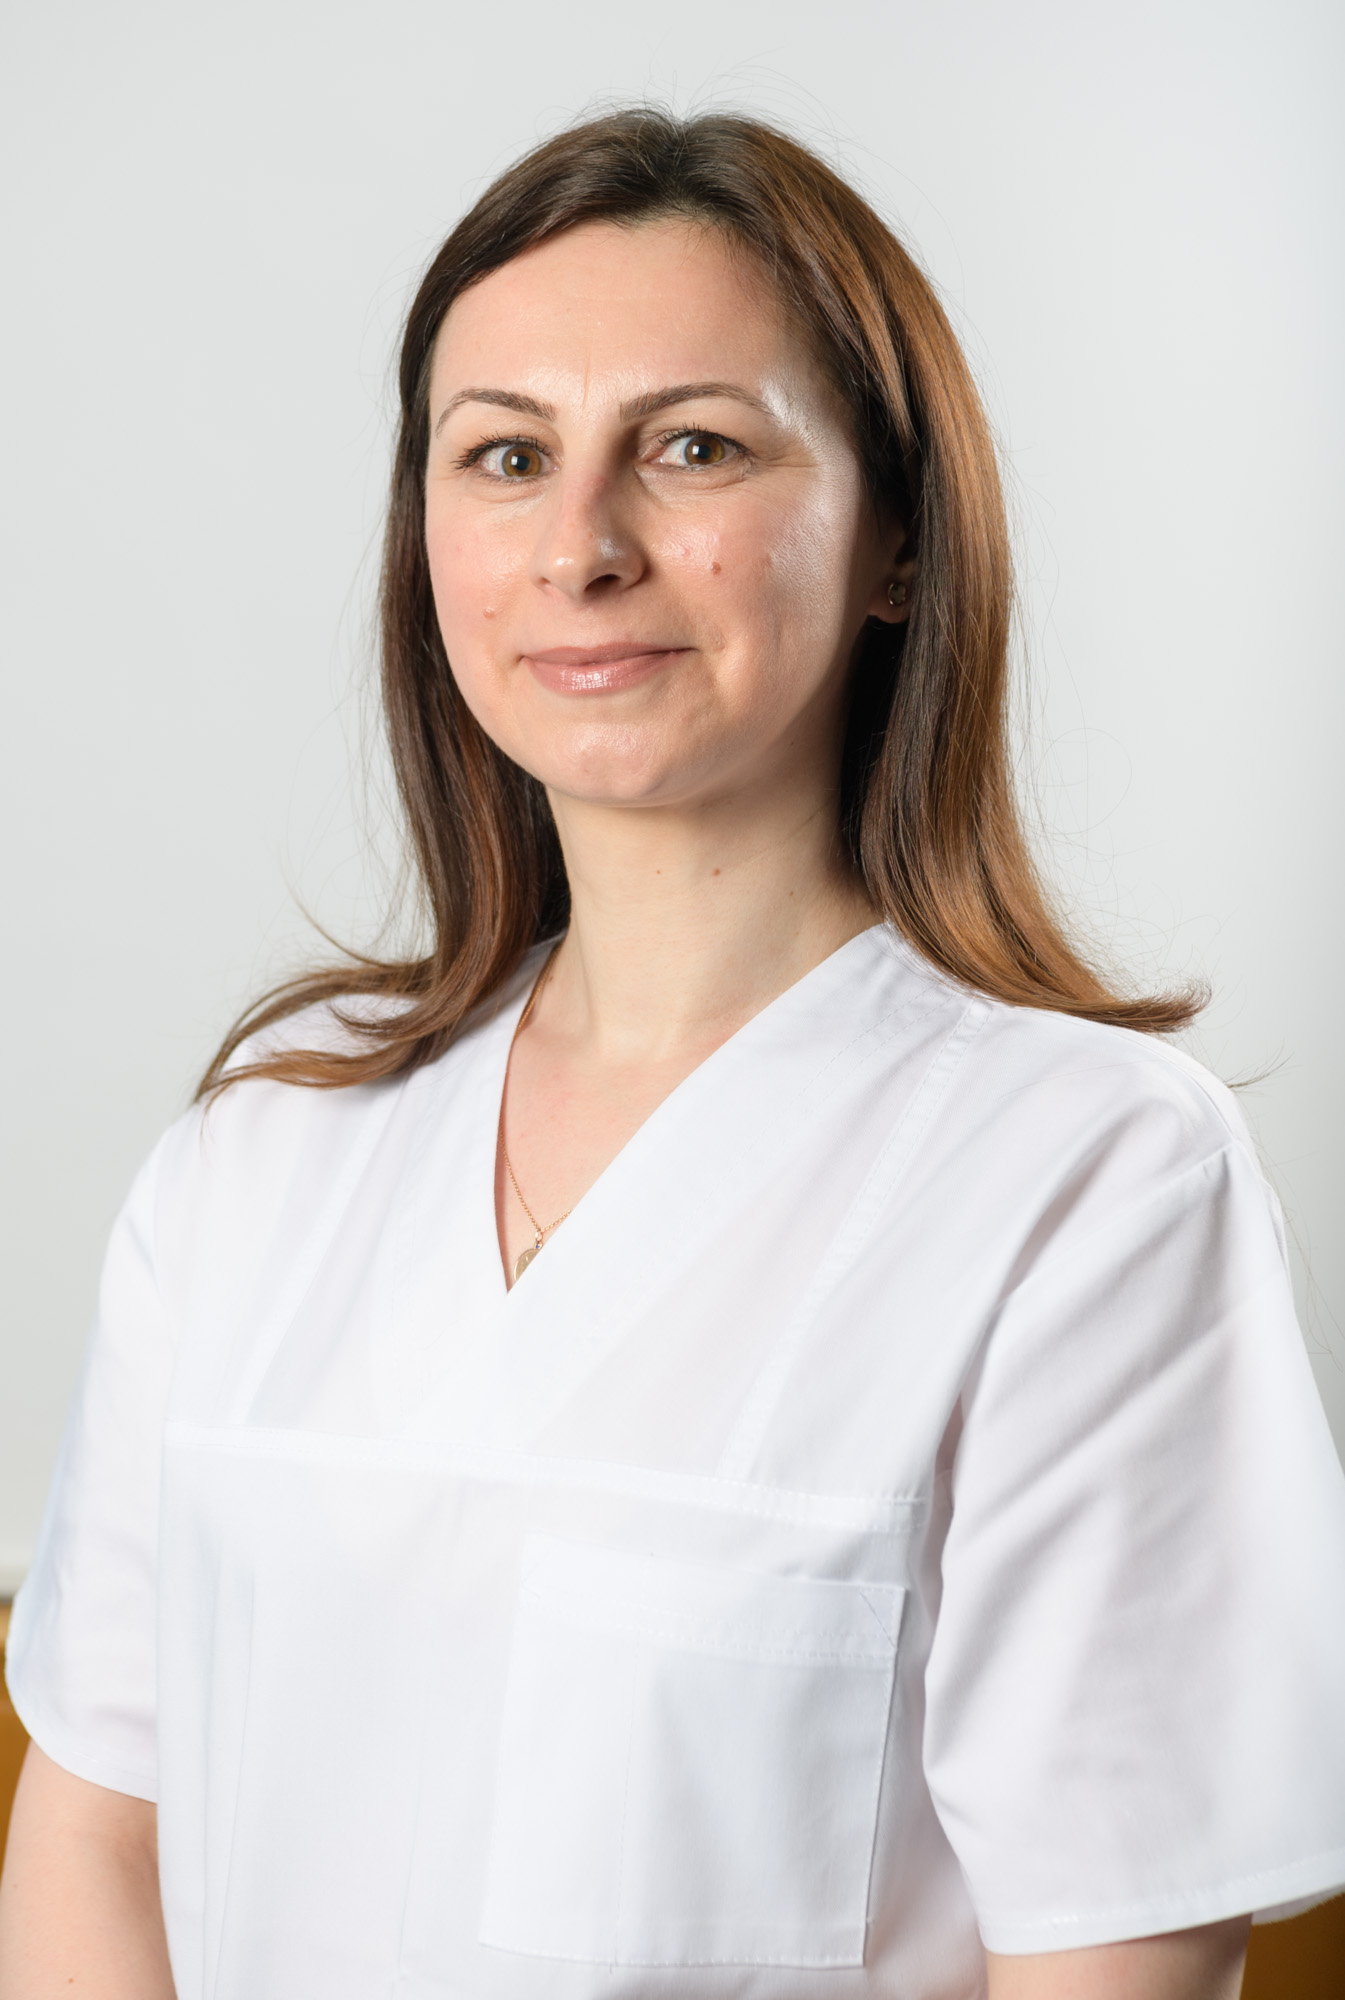 Dr. Mihaela Barbu